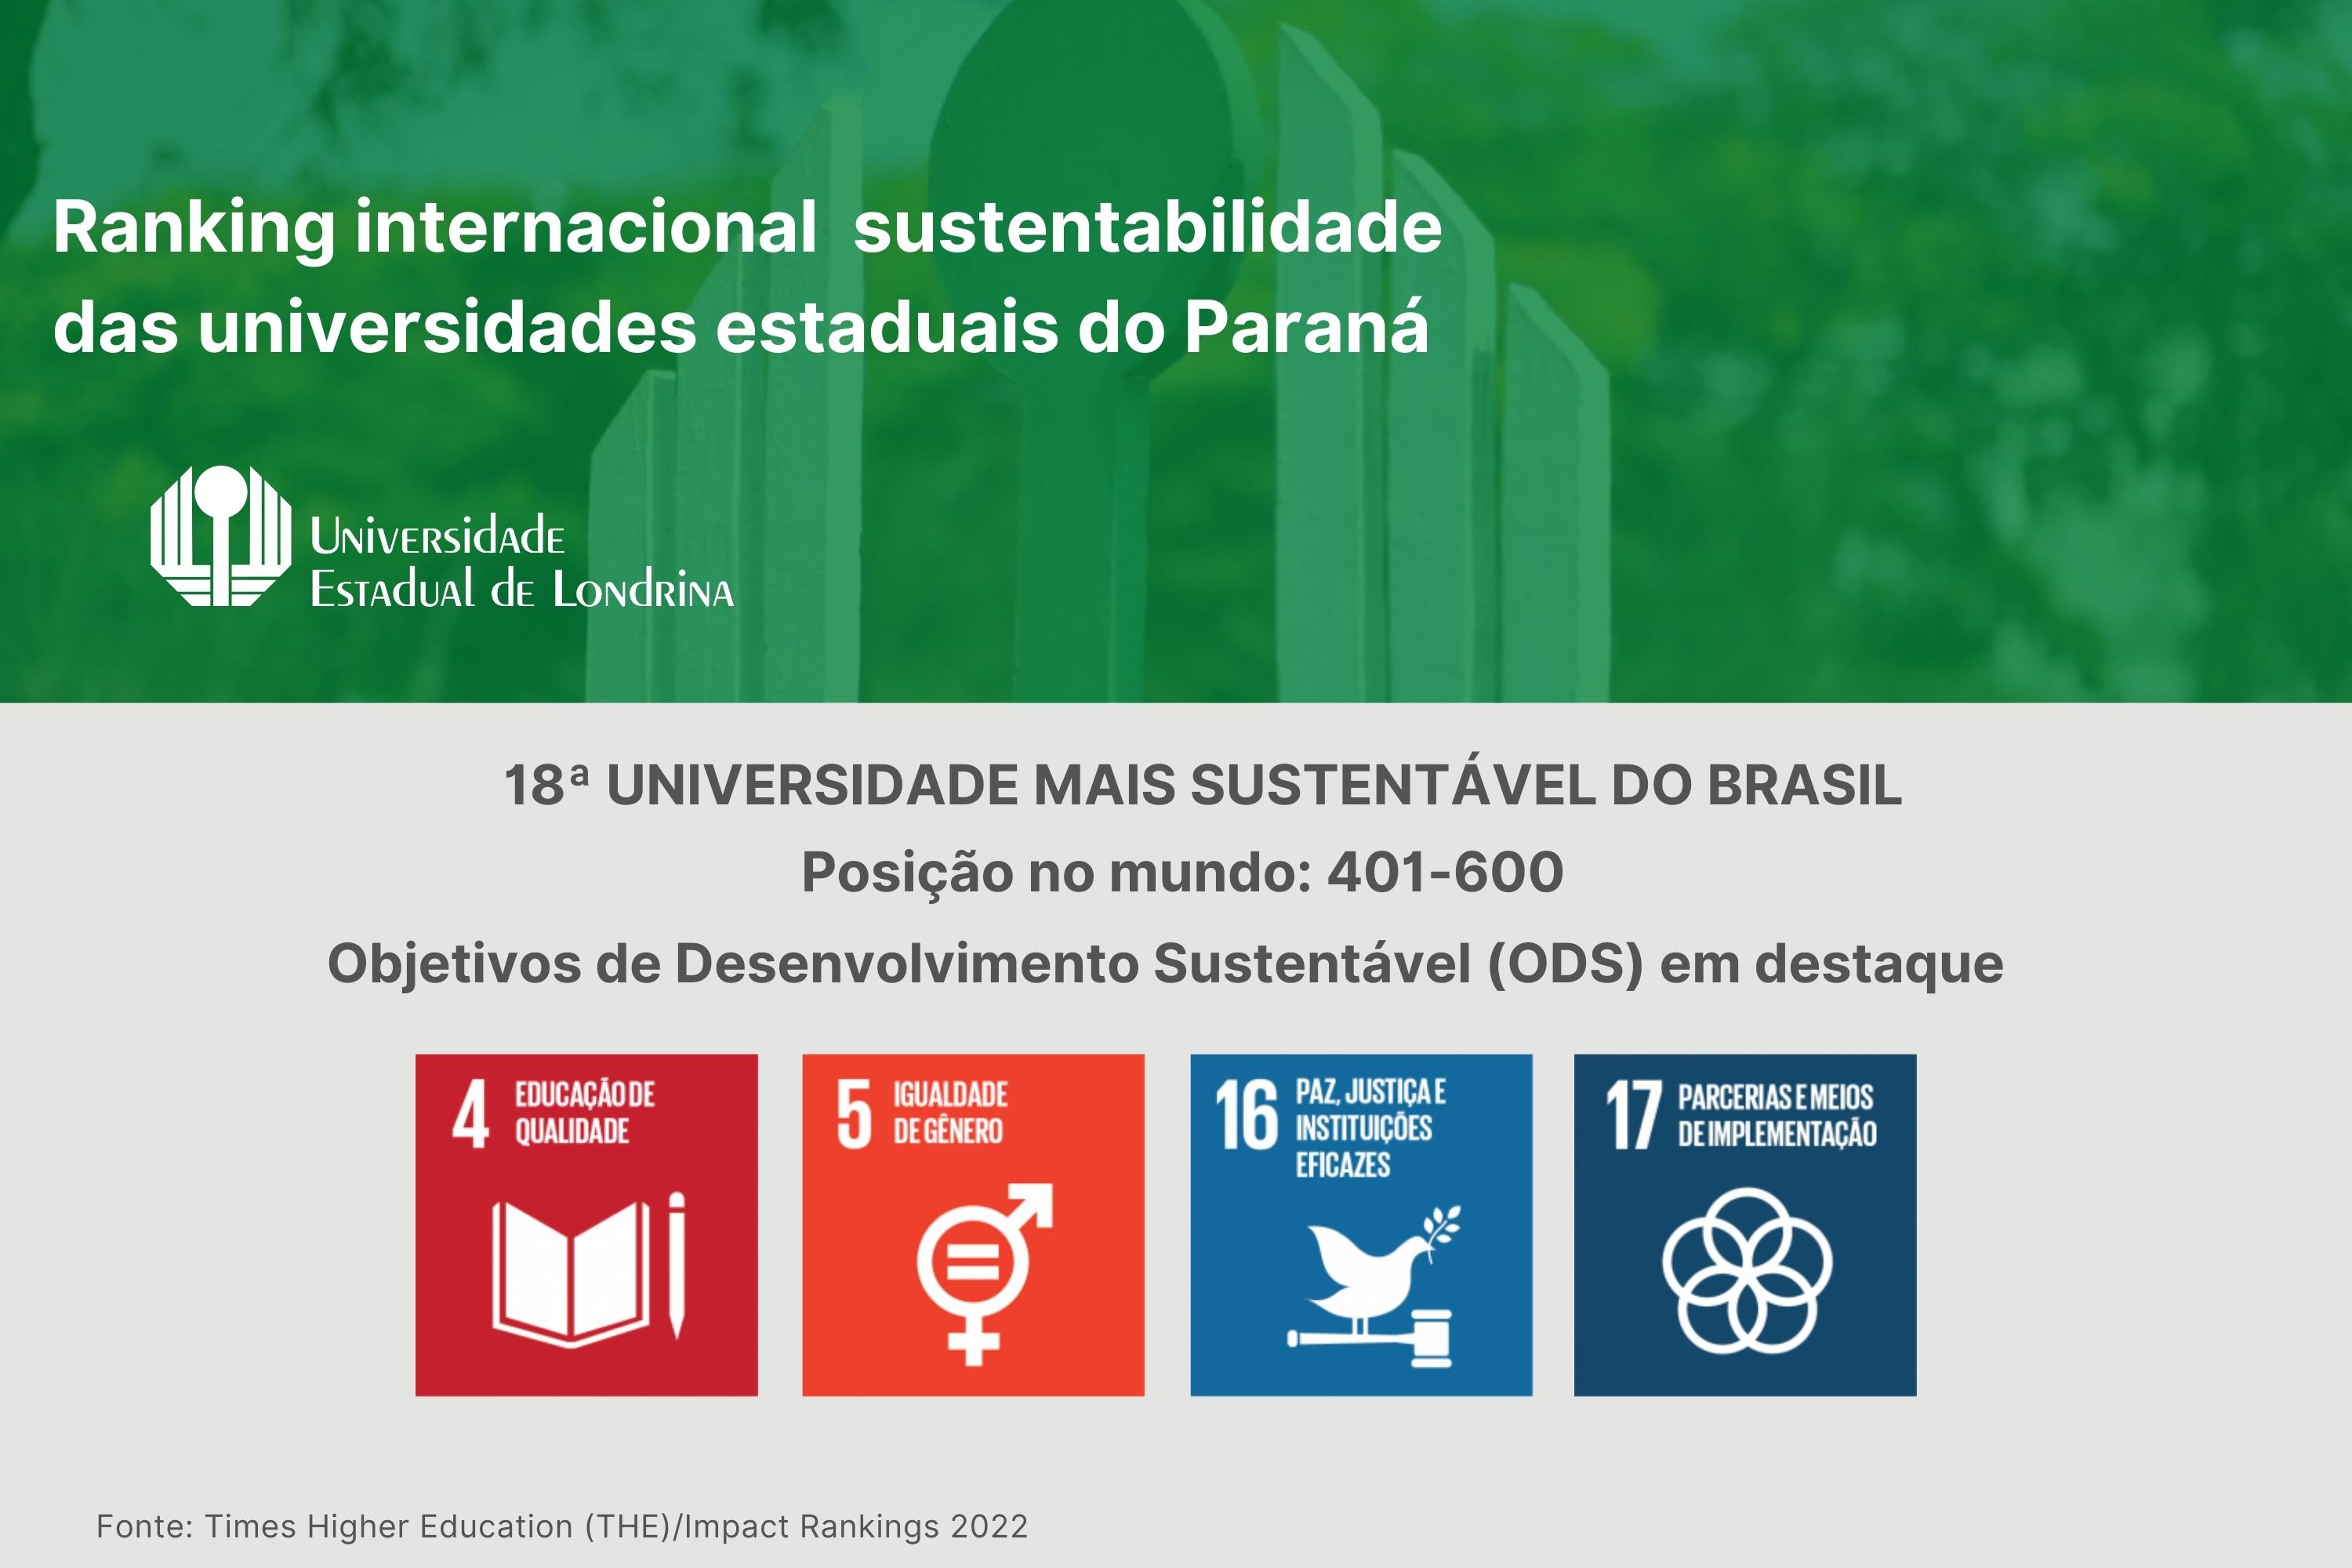 Ranking internacional posiciona a UEL como a 18ª universidade mais sustentável do Brasil